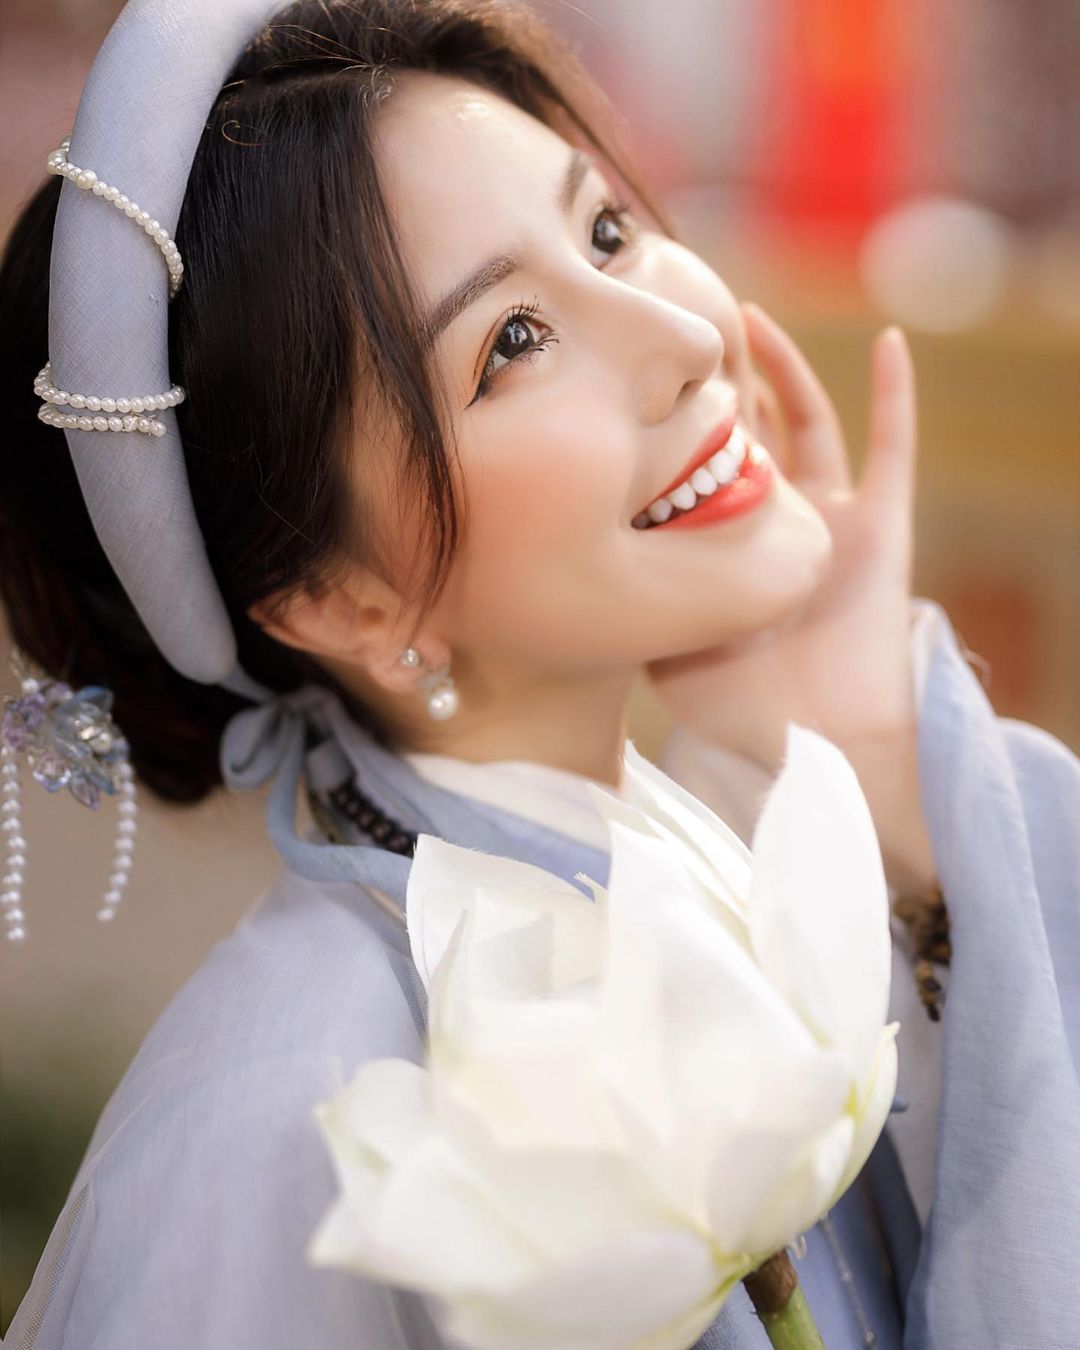 越南仙女系正妹「Chin」零死角美貌超逆天视角